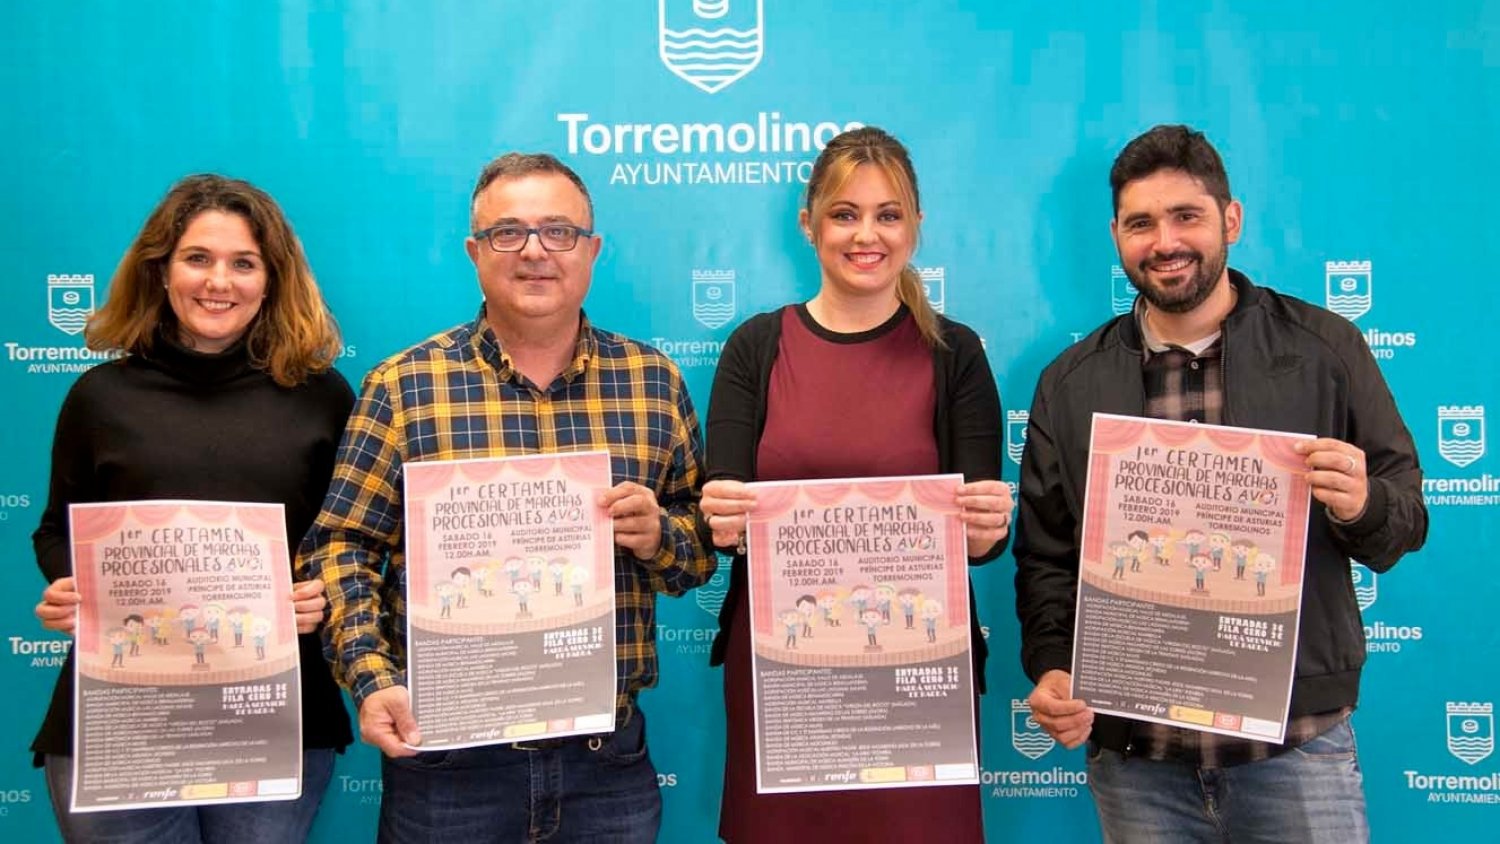 Torremolinos acoge el primer Certamen Provincial de Marchas Procesionales a beneficio de AVOI